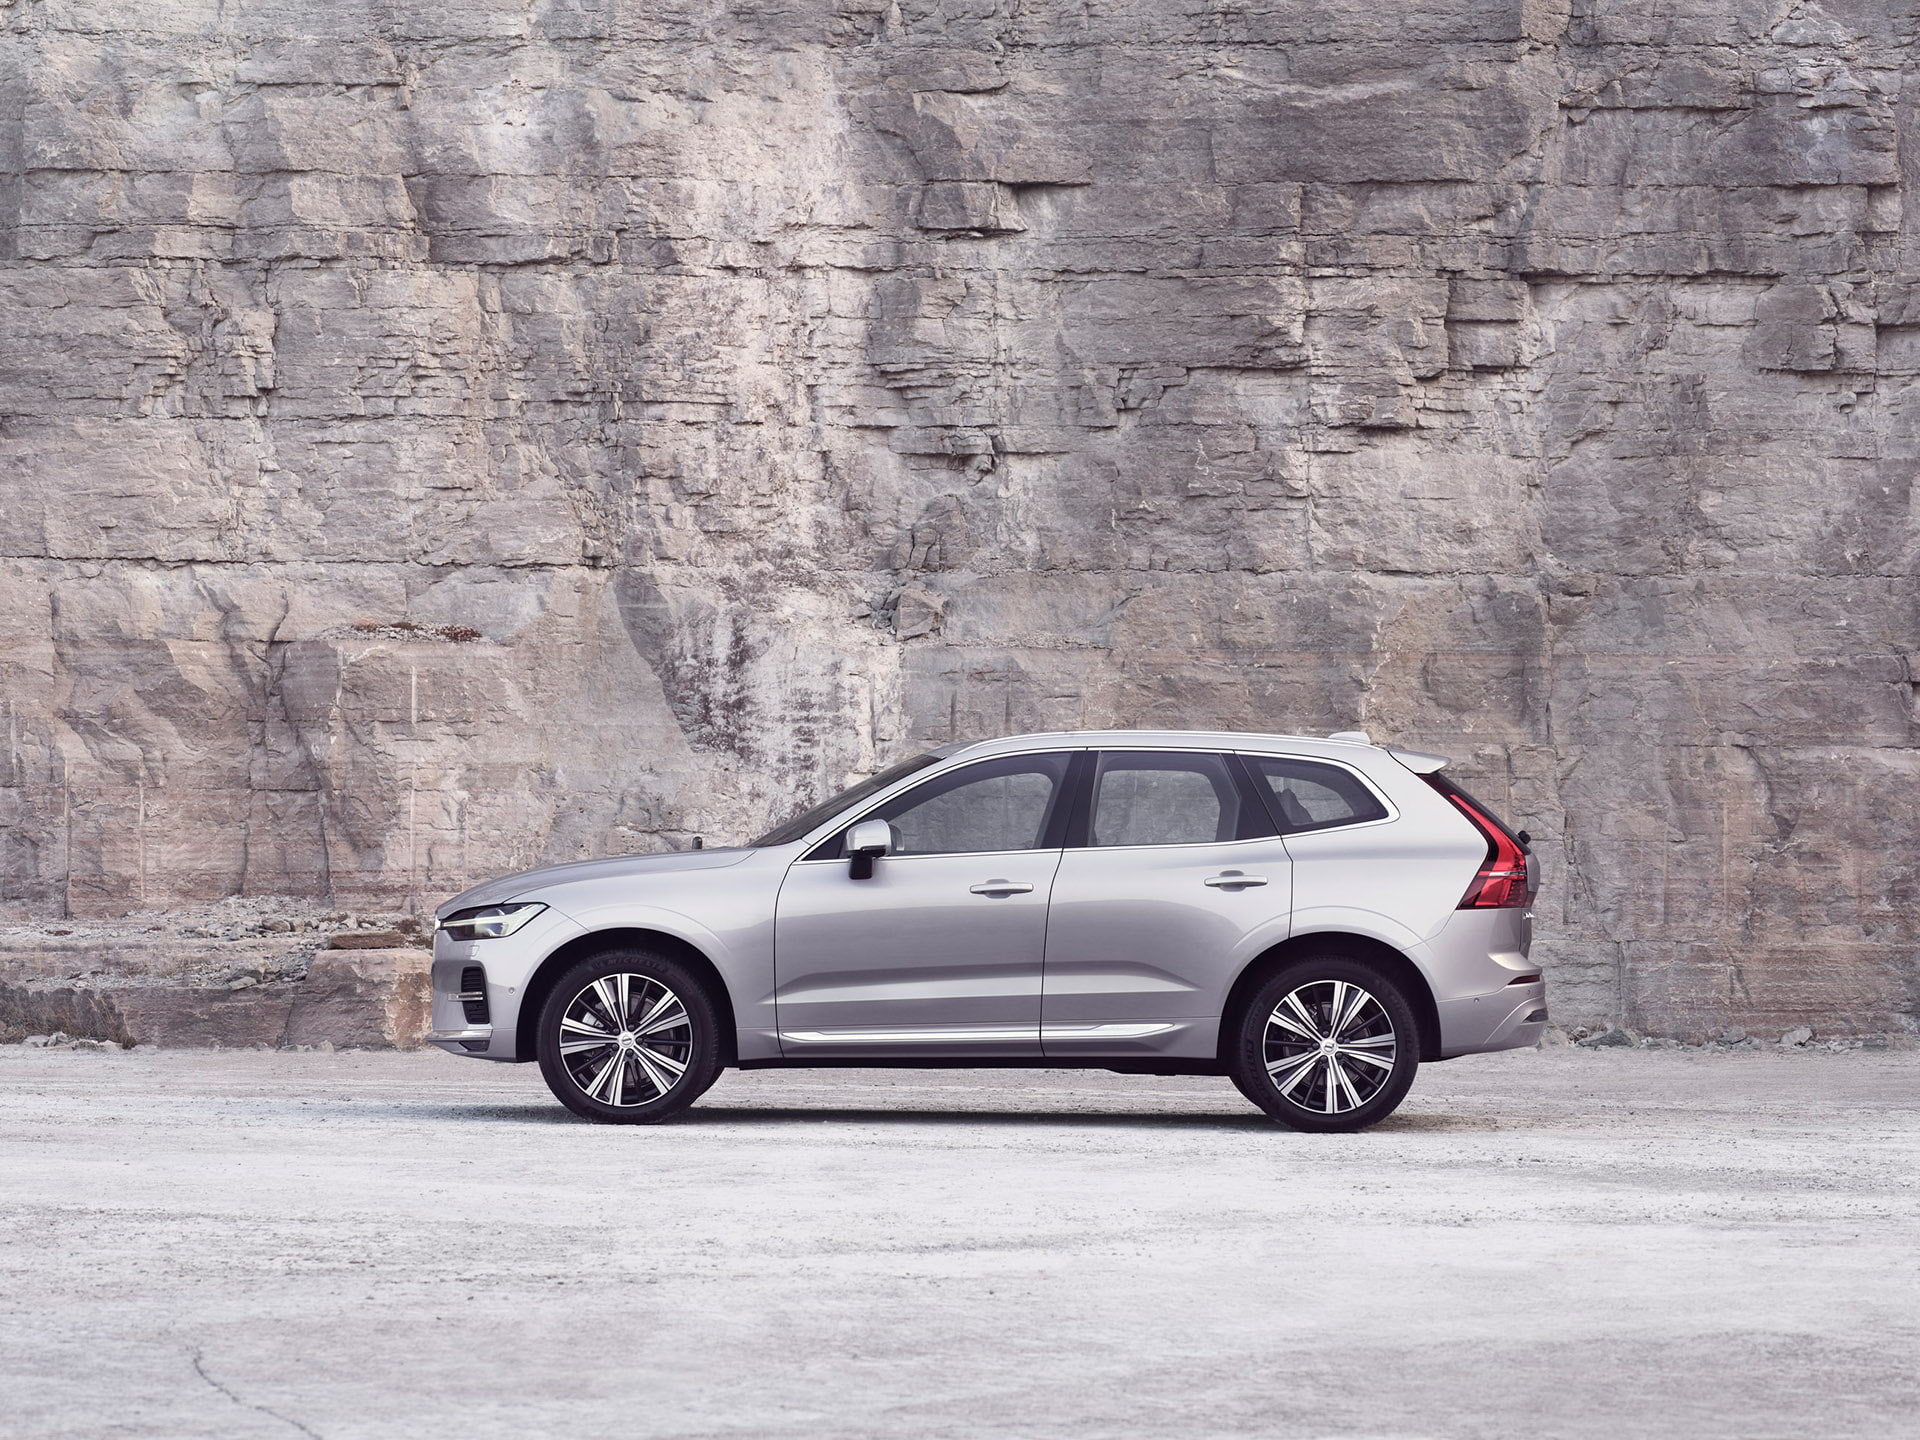 Серебристый Volvo XC60 стоит на фоне каменной стены.